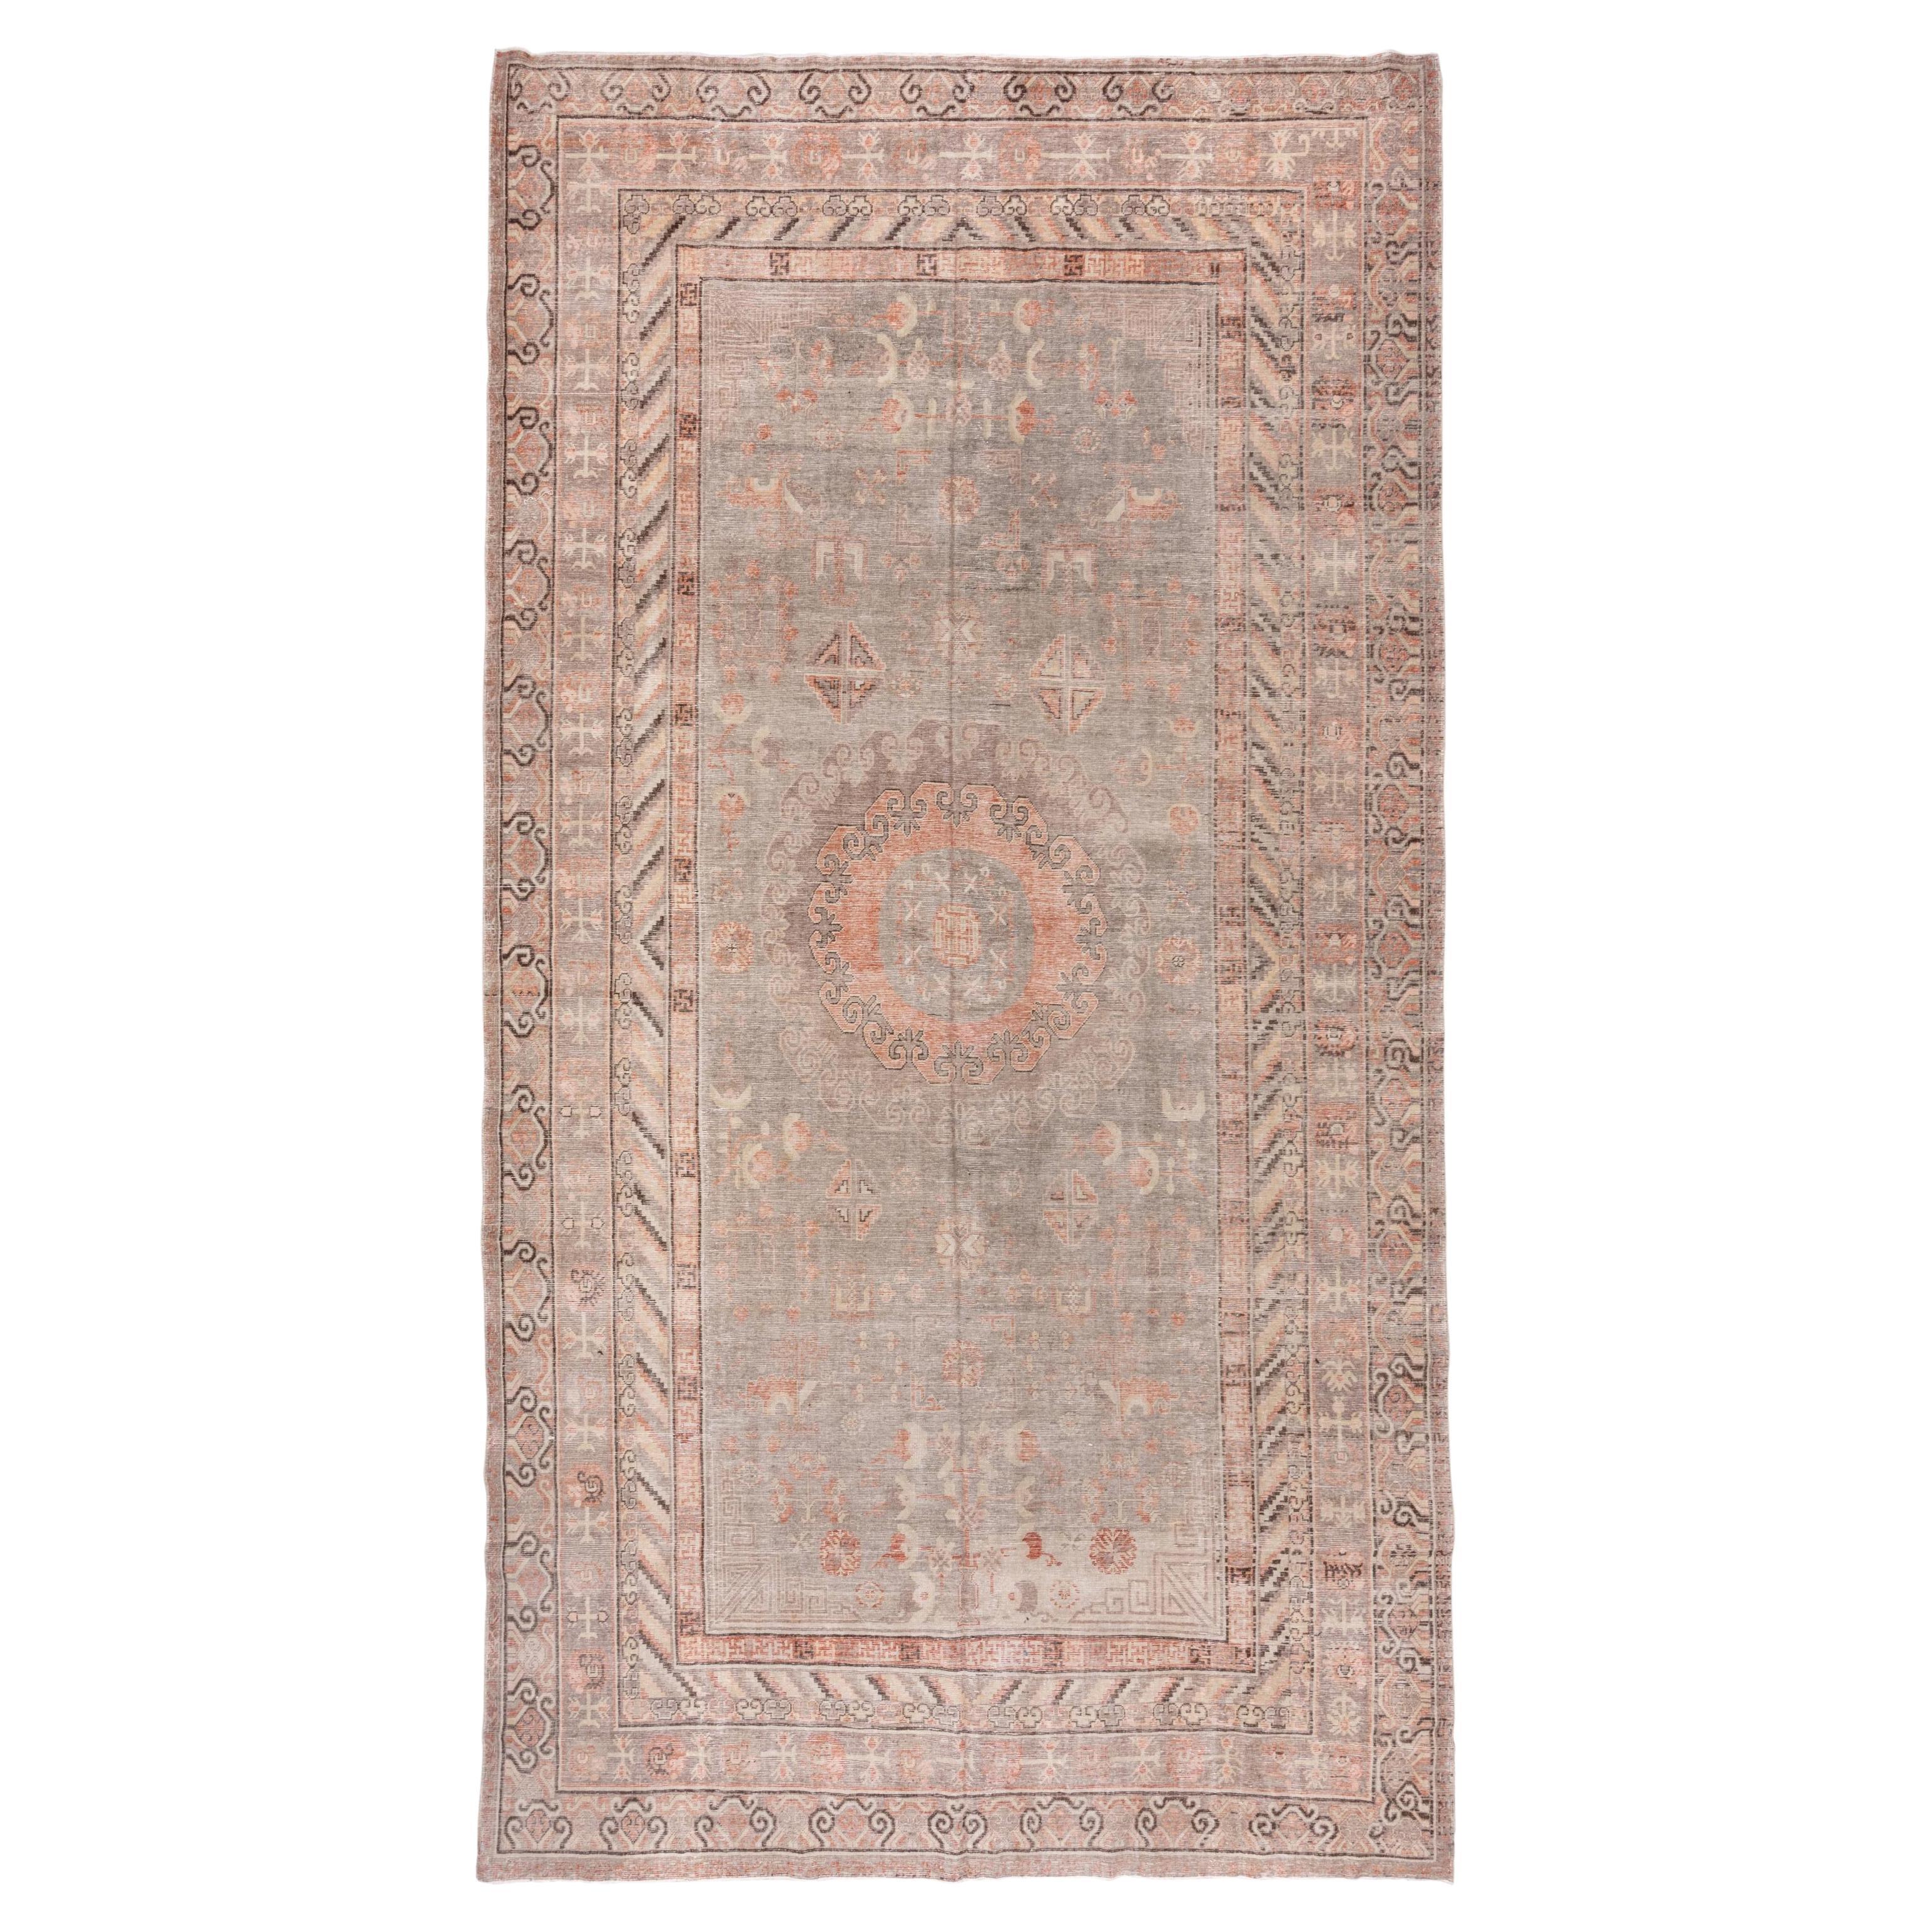 Antique Khotan Gallery Carpet, Soft Palette, circa 1910s For Sale